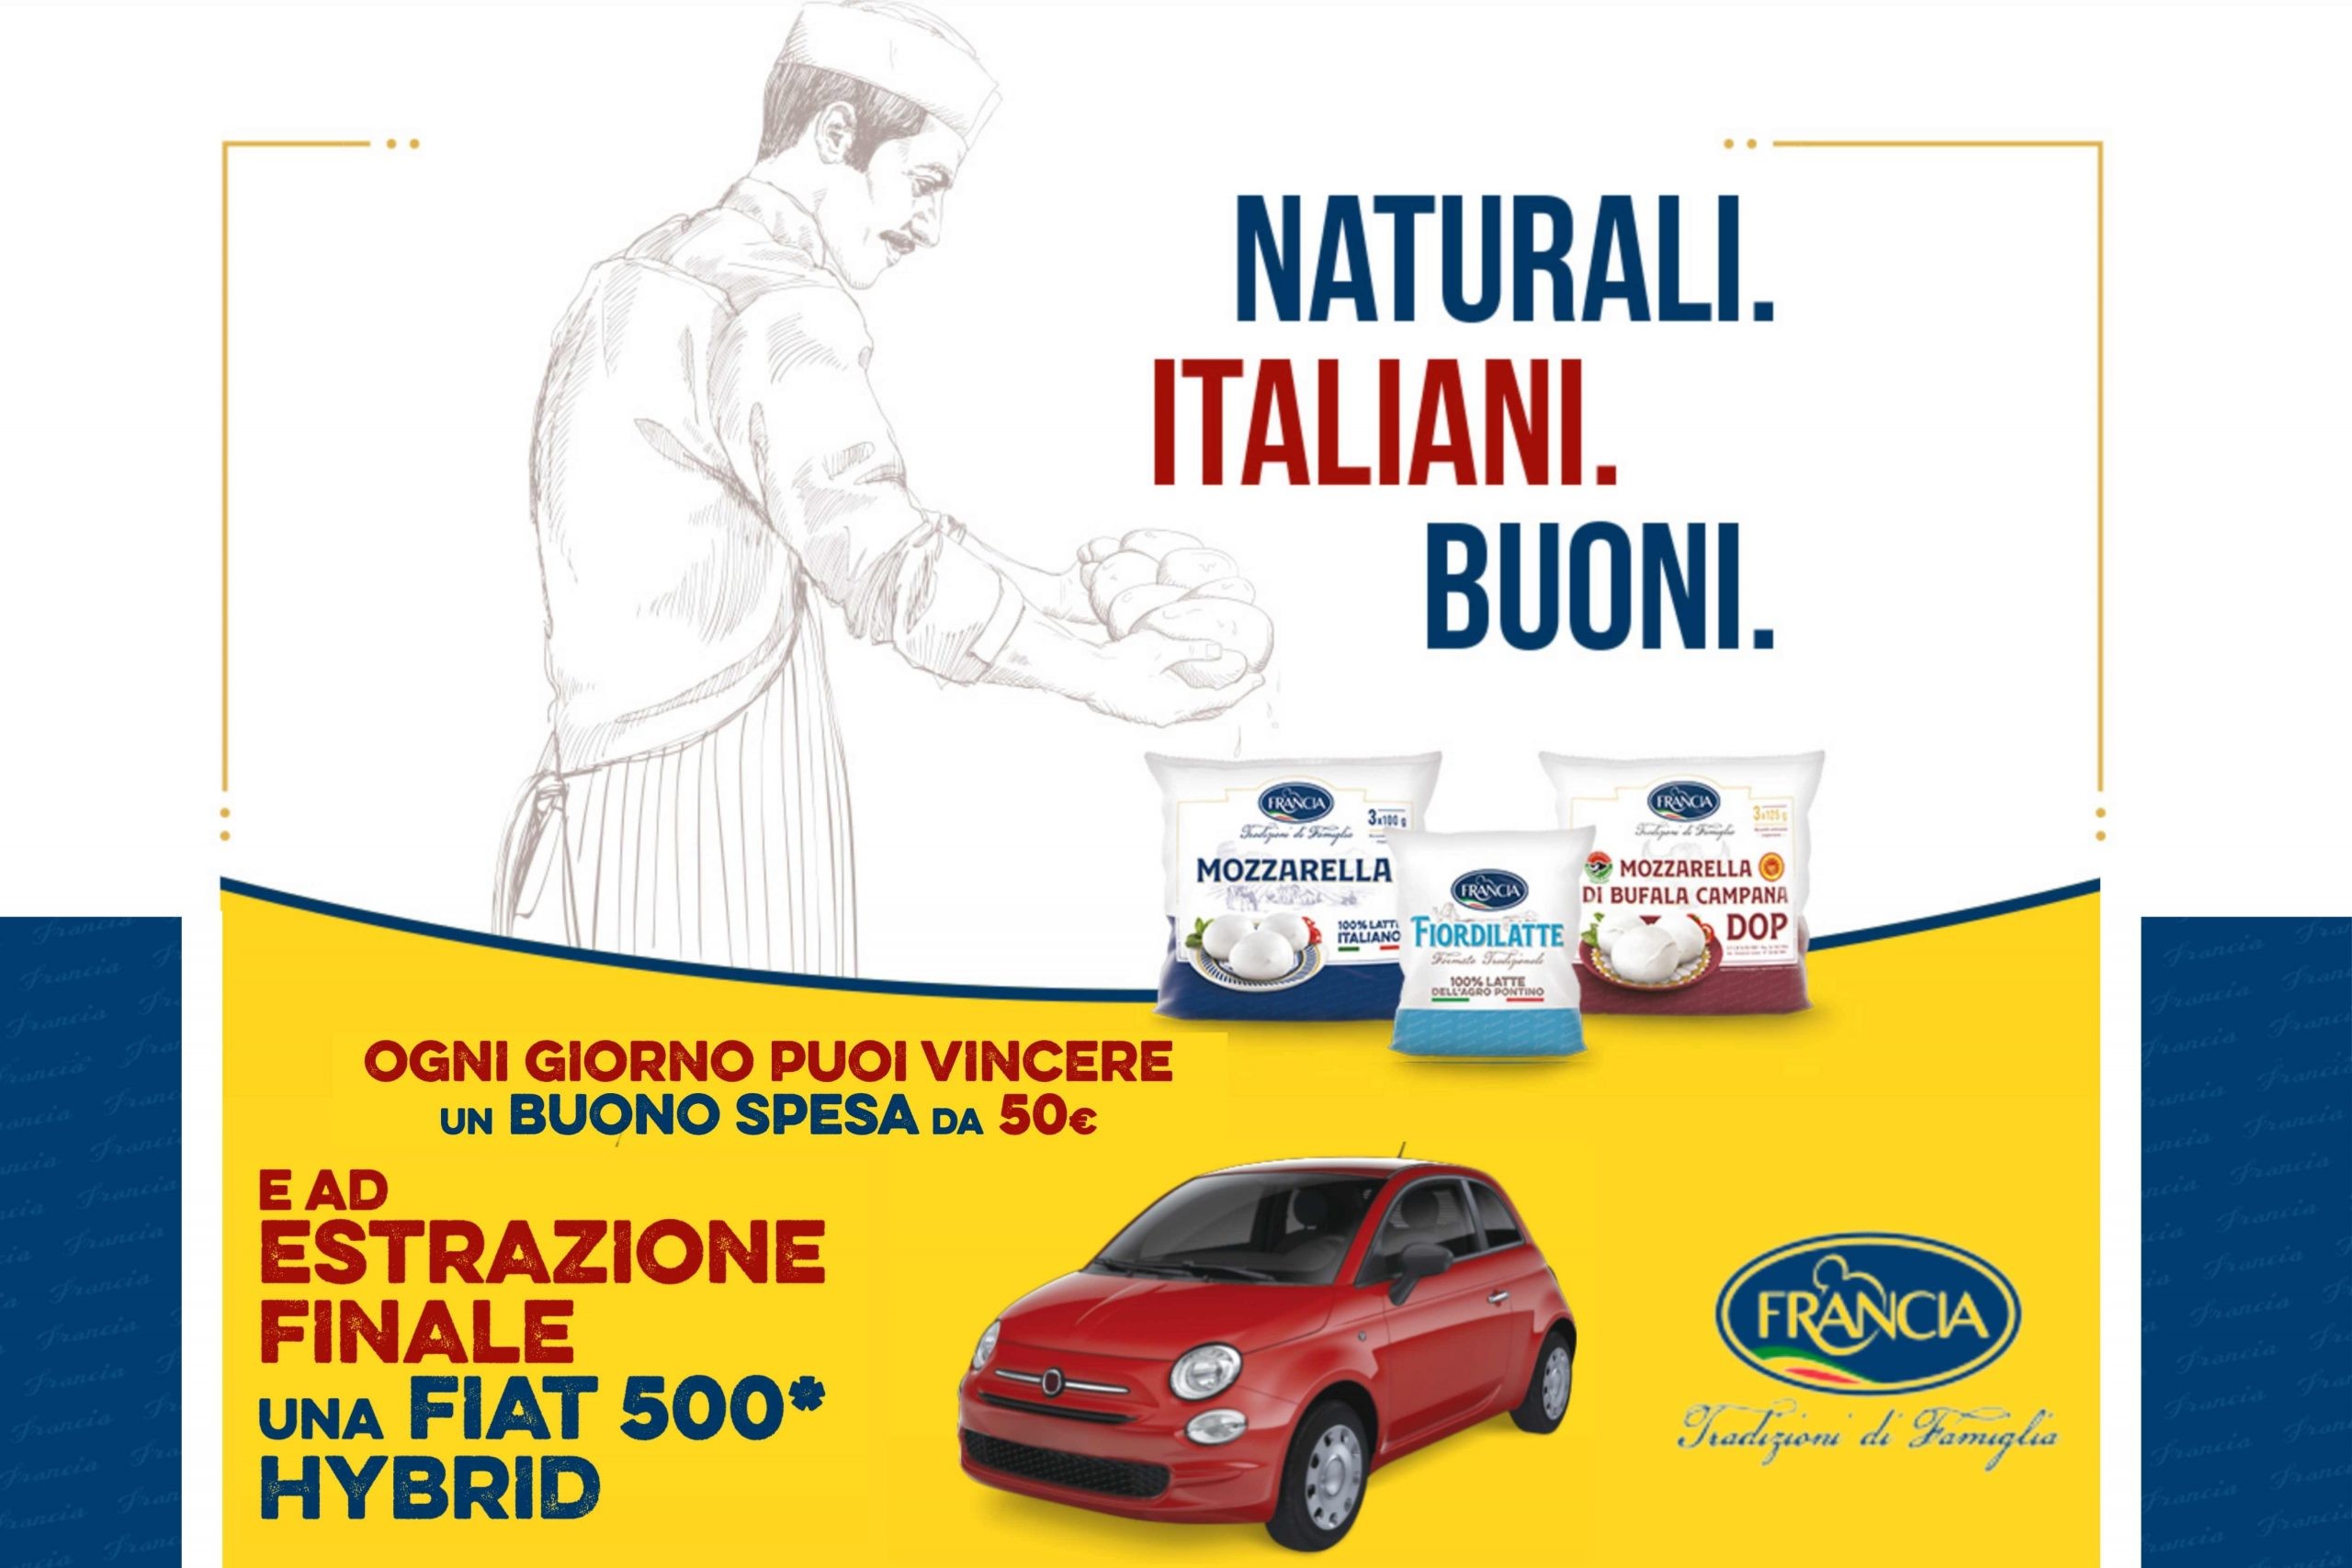 Concorso “Naturali, Italiani, Buoni”: come vincere buoni spesa da 50€ e una FIAT 500 Hybrid